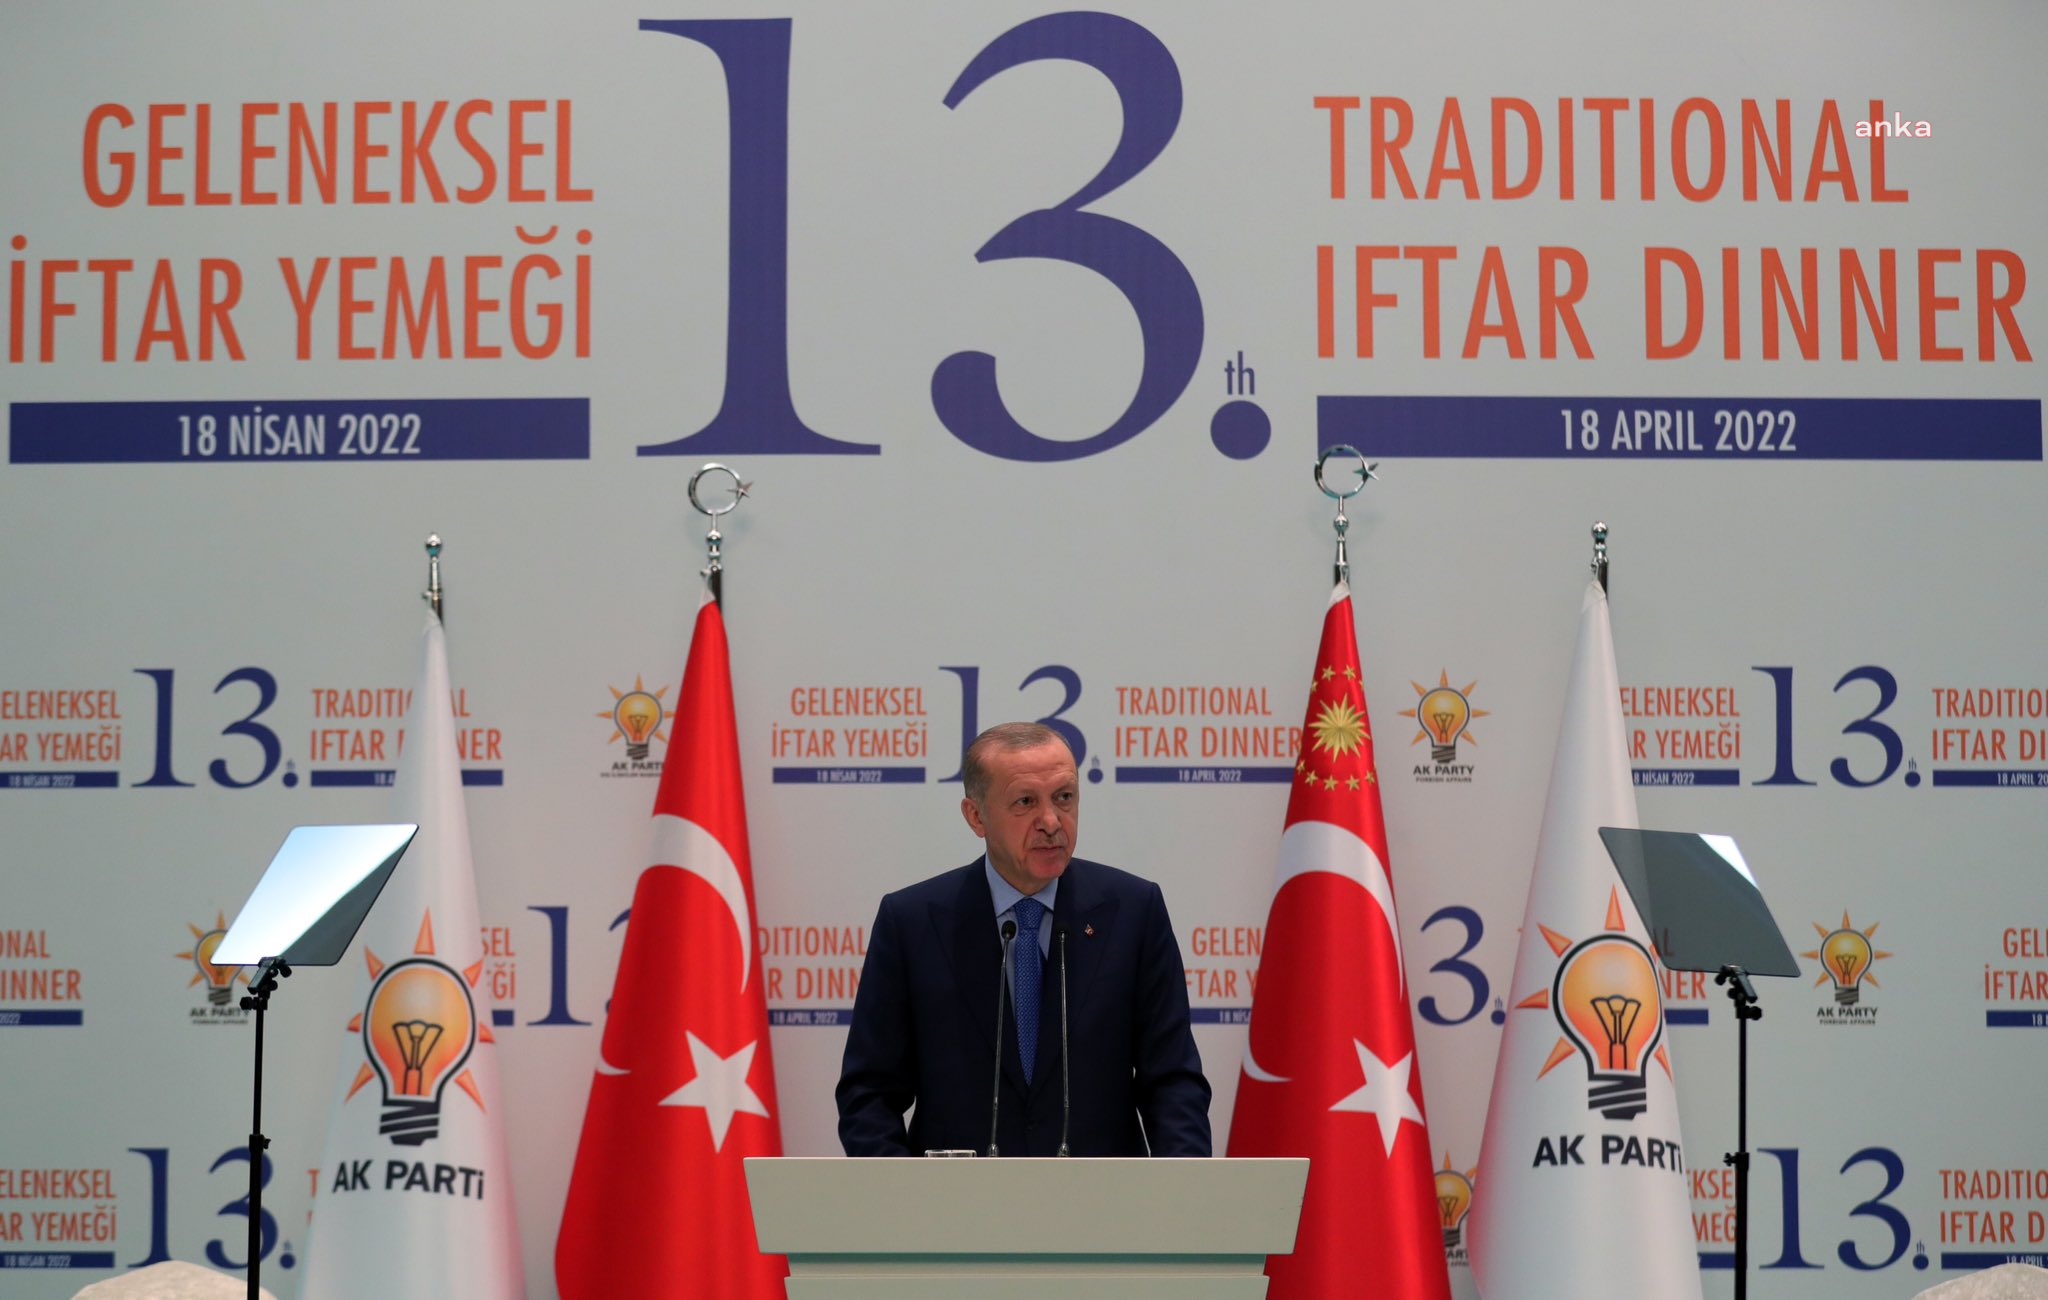 Erdoğan: Suriyeli kardeşlerimizin geri dönüşü için elimizden gelen gayreti gösteriyoruz